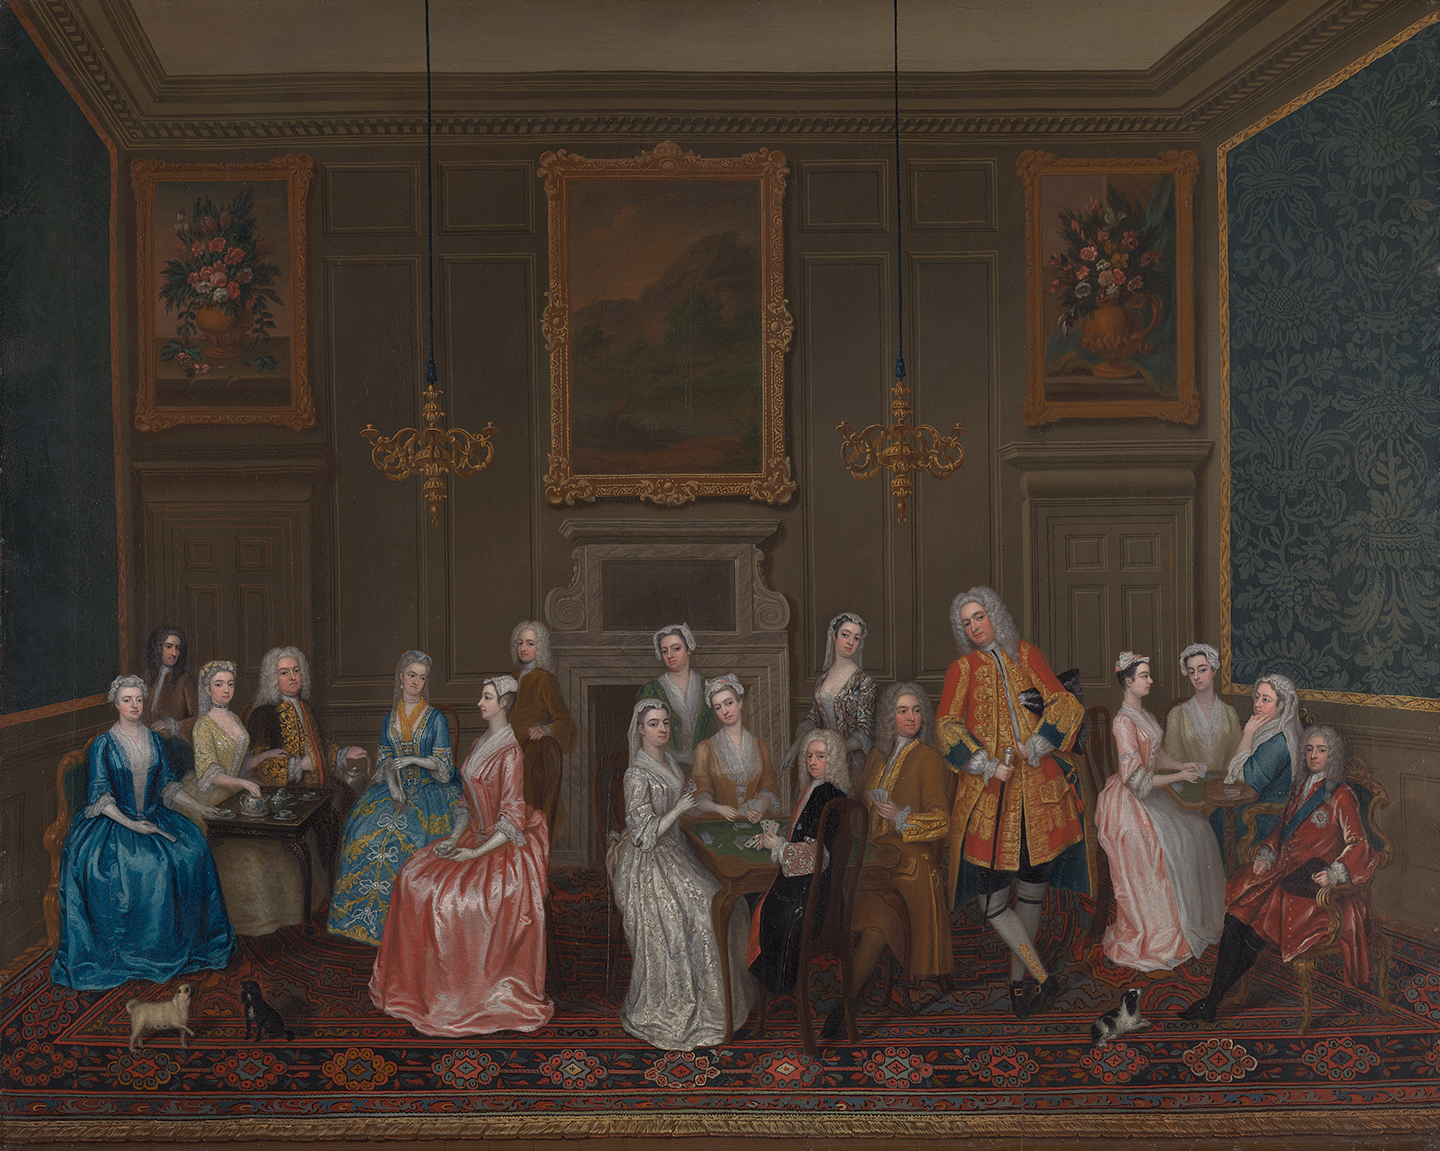 Bức tranh “Tea Party at Lord Harrington’s House, St. James’s” (Tiệc trà tại tư gia của Ngài Harrington ở St. James’s), họa sỹ Charles Philips, năm 1730. Tranh sơn dầu trên vải canvas; kích thước: 40 1/4 inch x 49 3/4 inch. Trung tâm nghệ thuật Anh quốc tại Đại học Yale, Connecticut. (Ảnh: Tư liệu công cộng)